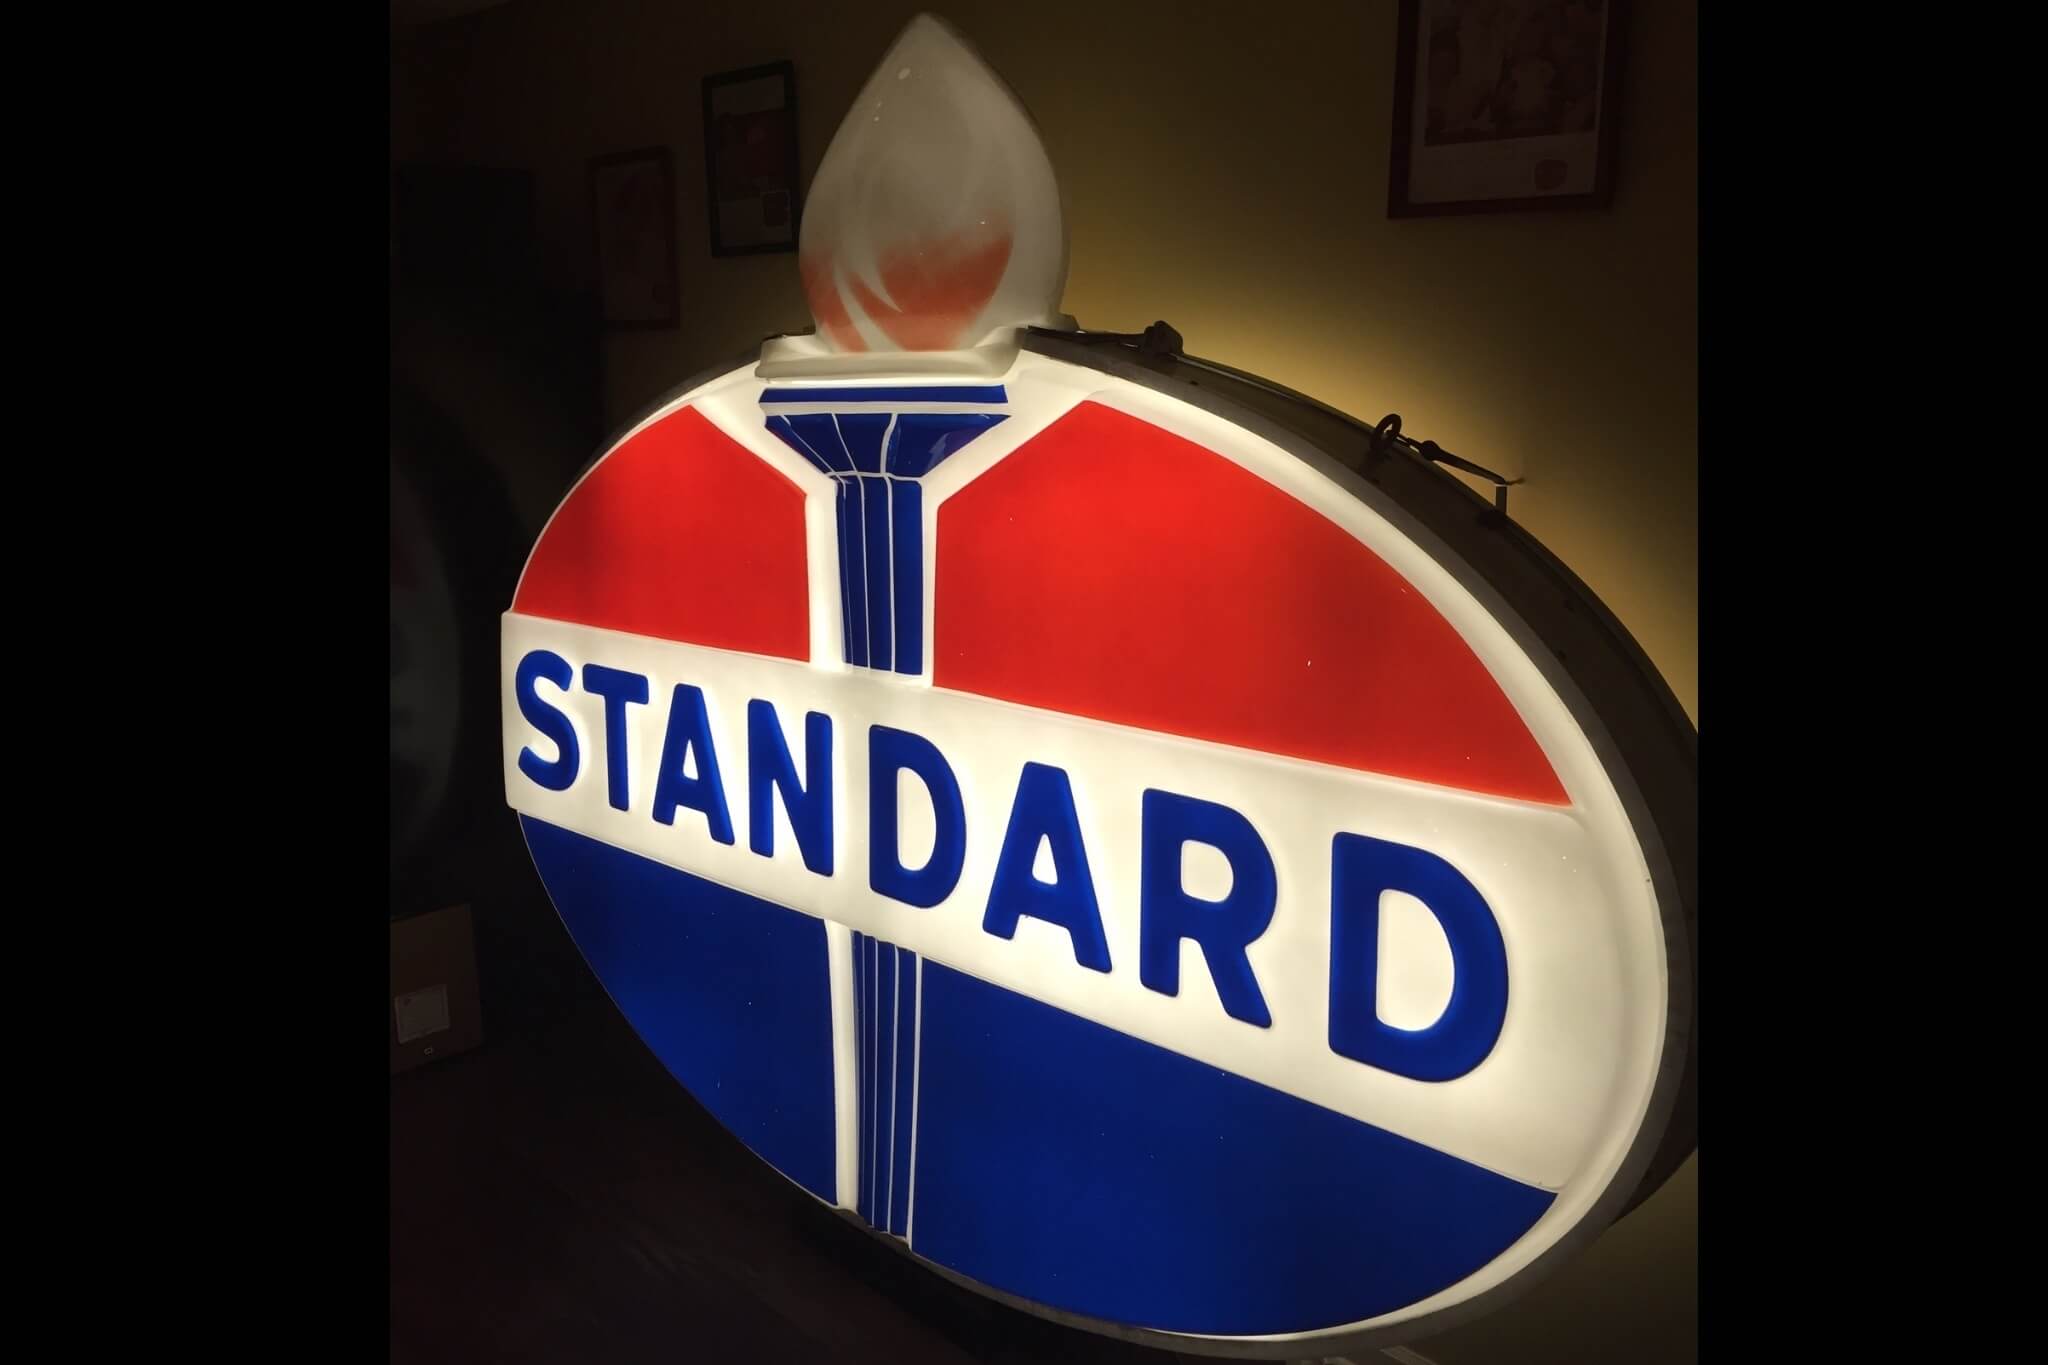 Authentic Original Standard Oil Illuminated Sign (8' x 6')